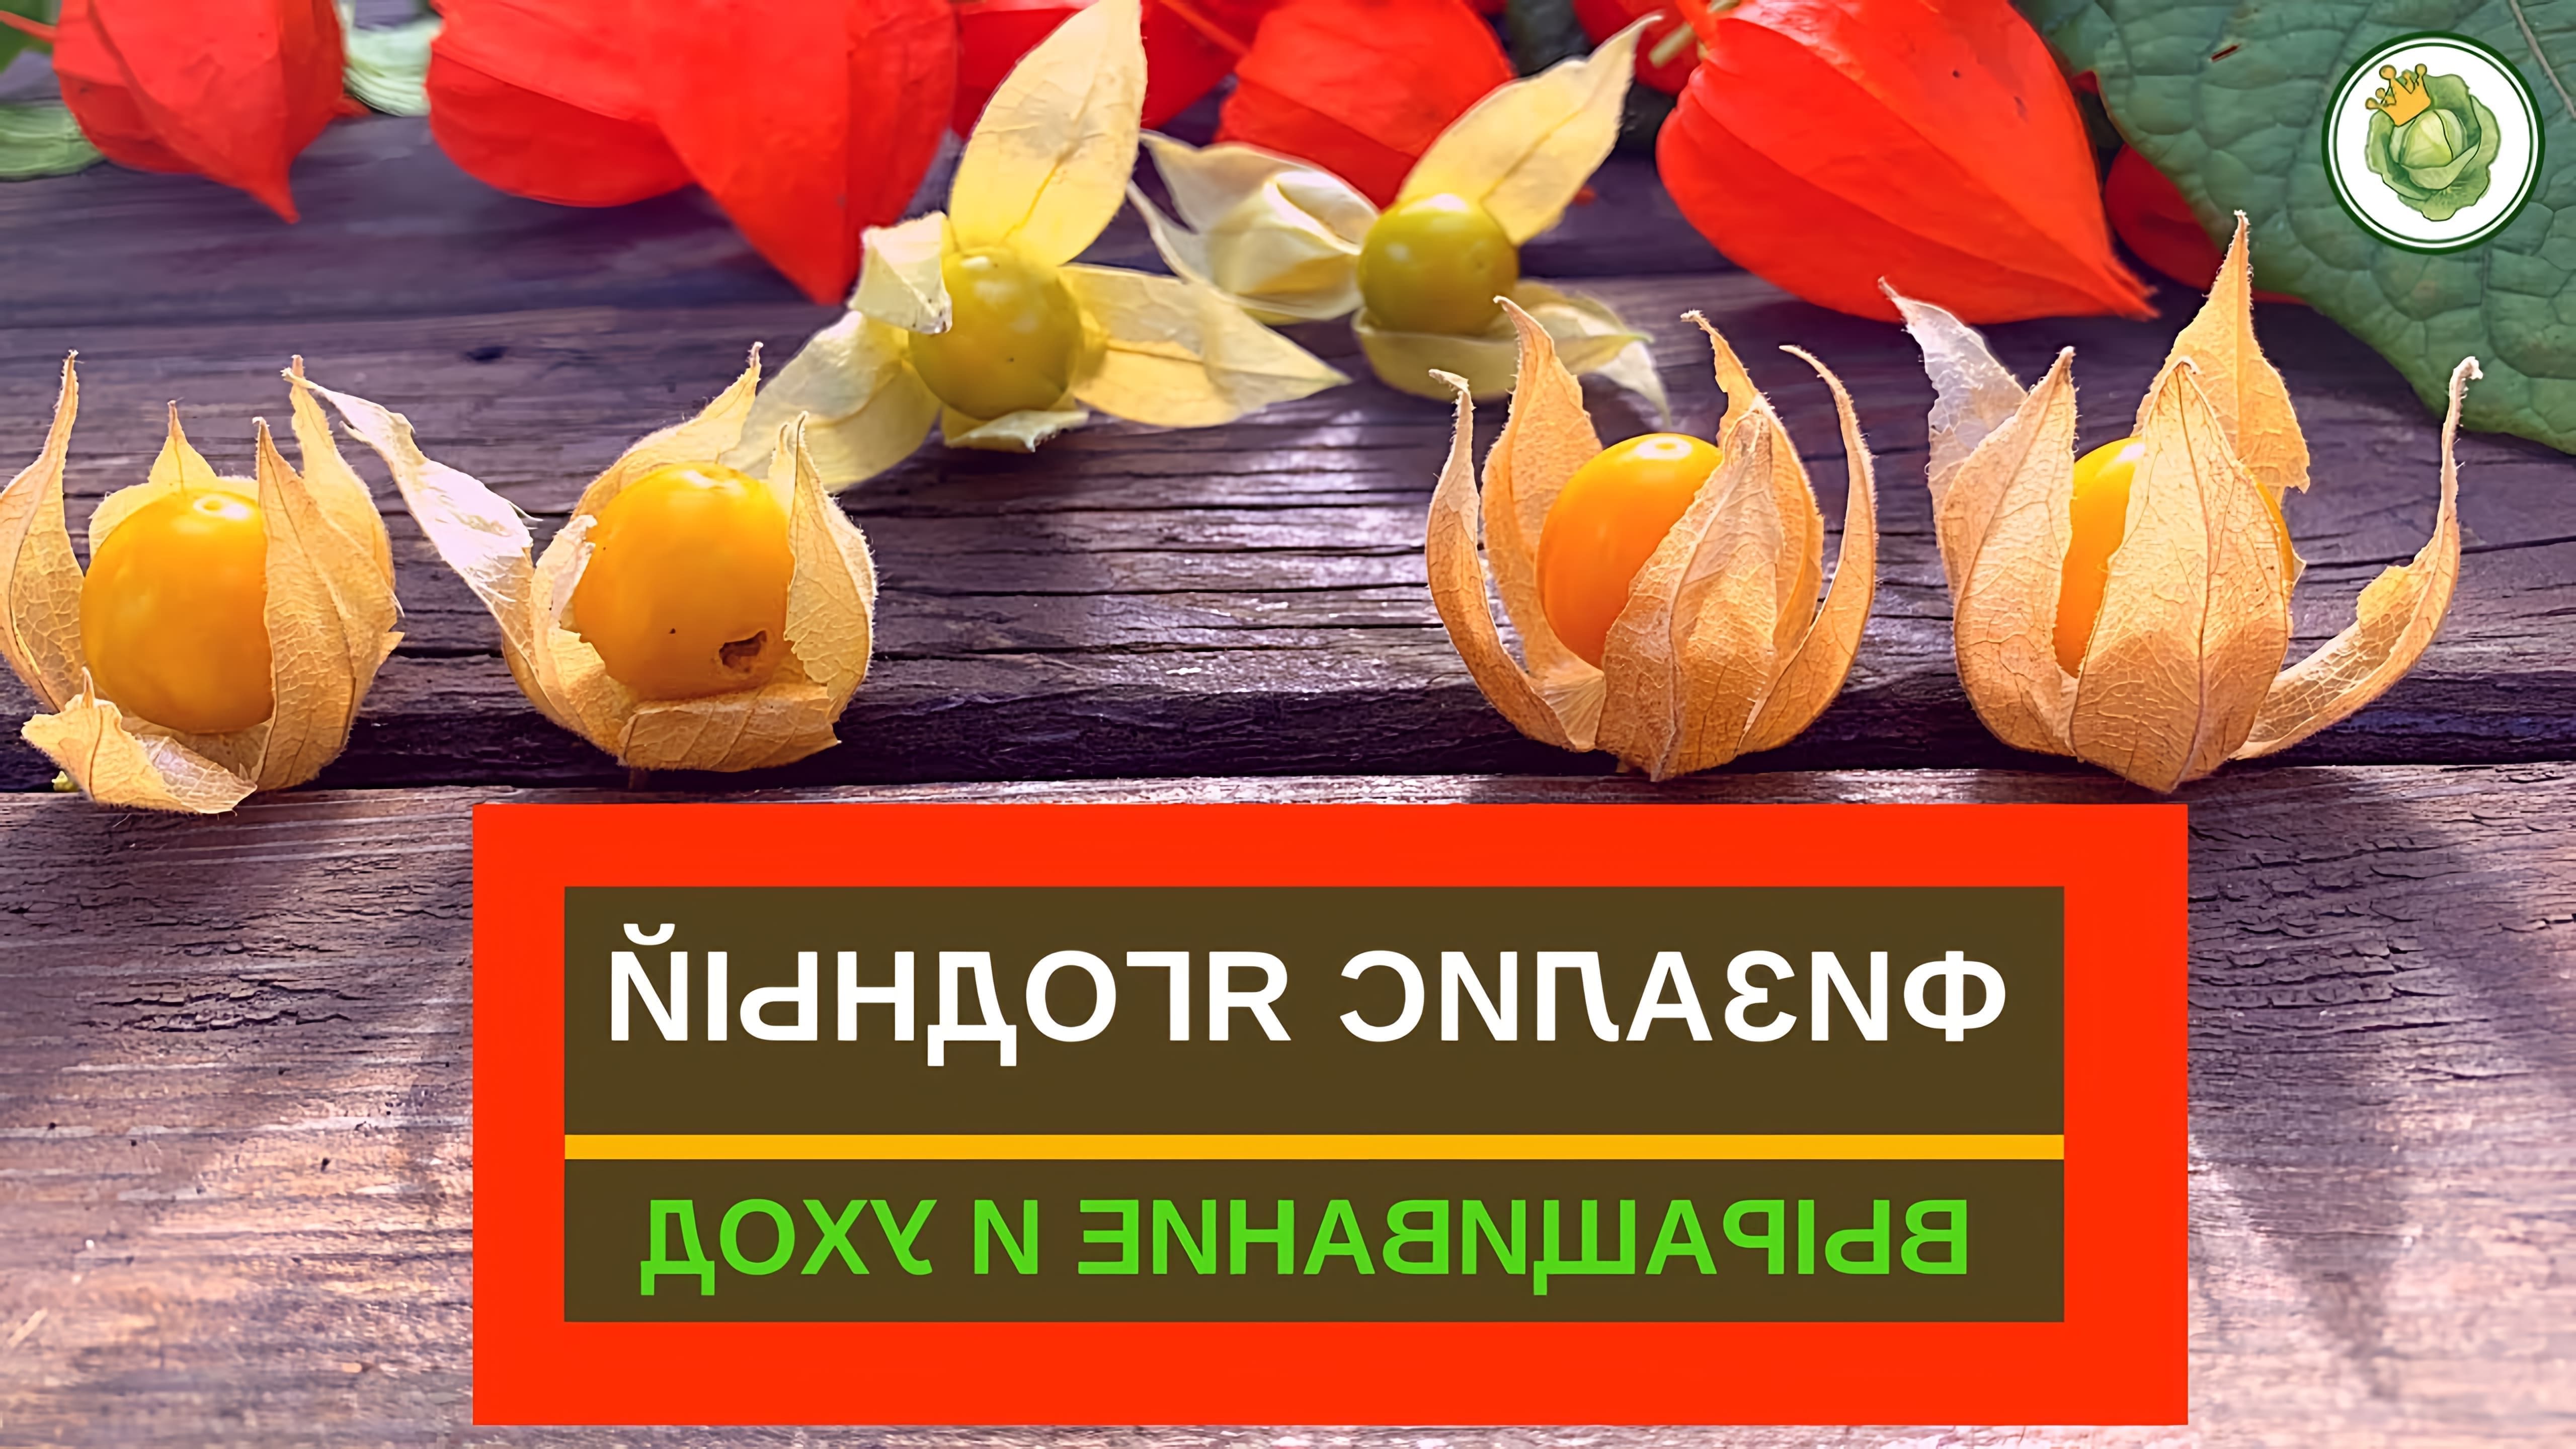 В этом видео королева капусты показывает физалис ягодный, который является съедобной разновидностью физалиса